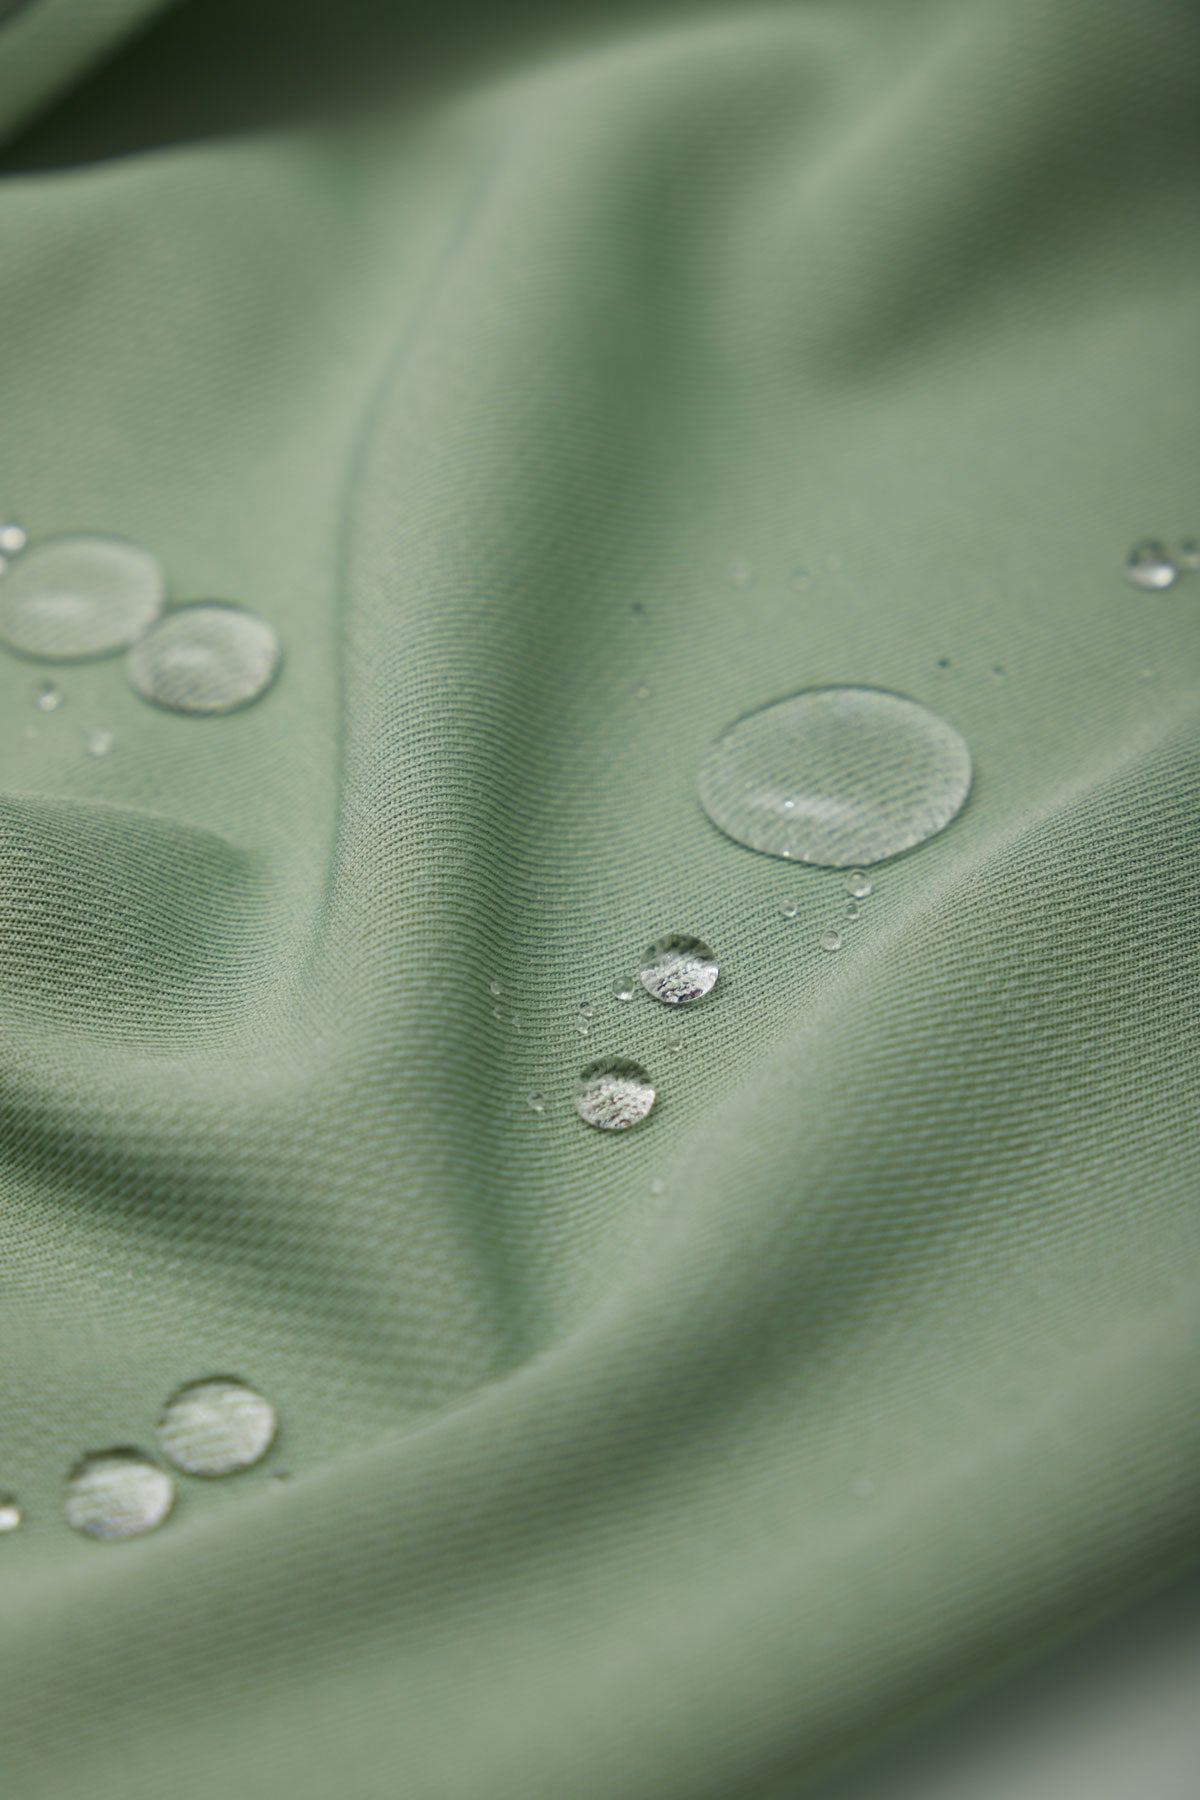 Camisa bowling verde safari de Sepiia, suave y resistente a manchas y olores. Foto gotas